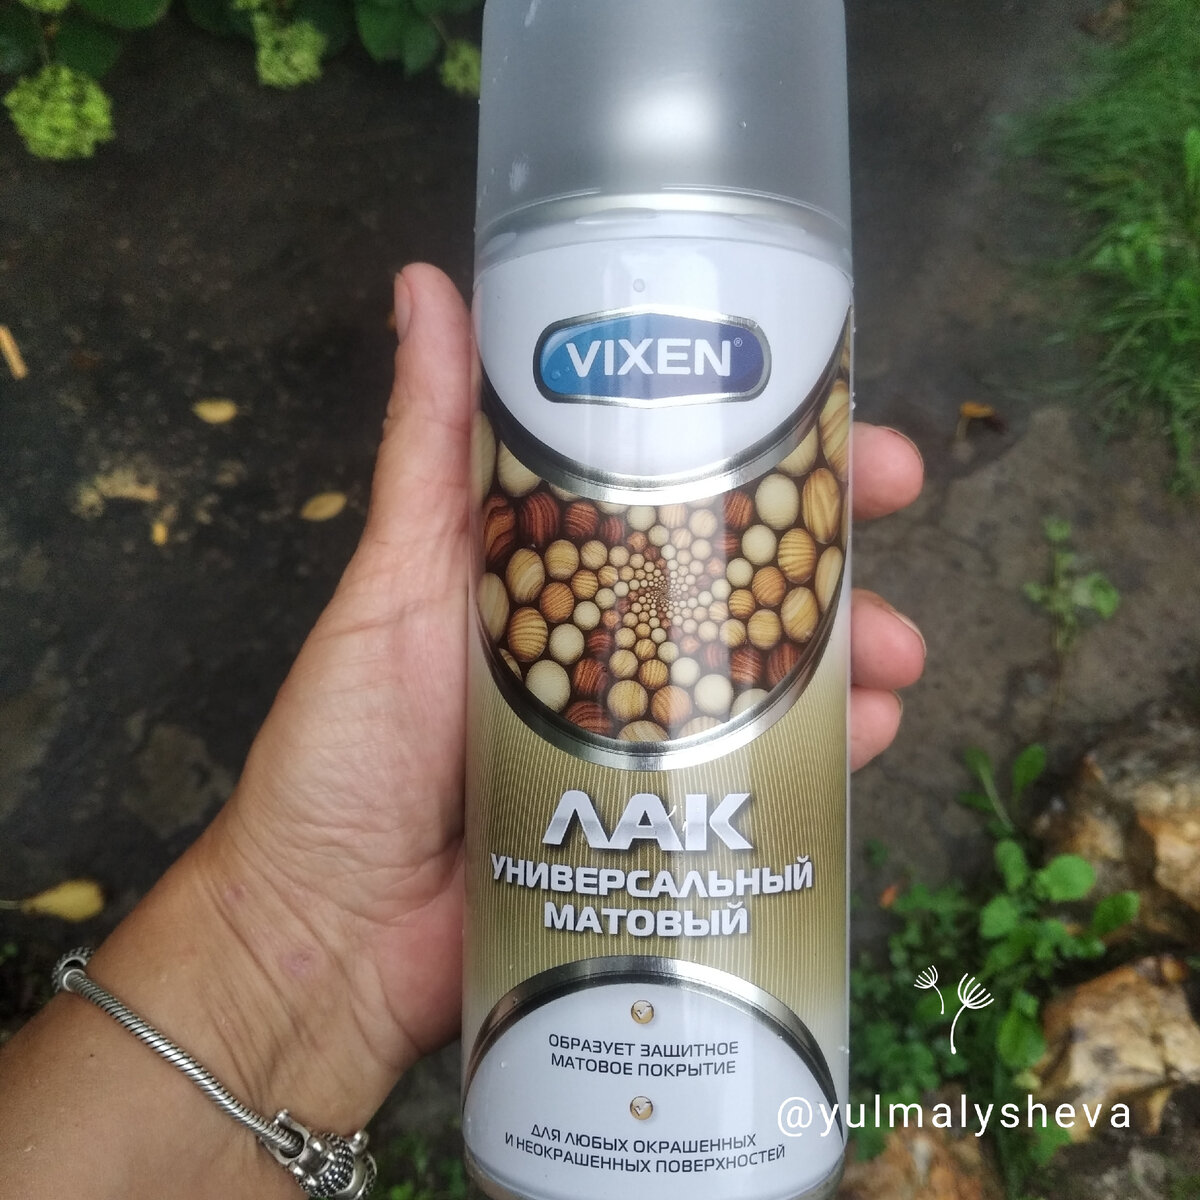 Матовый лак от Vixen даст приятную, бархатистую поверхность и защитит краску 